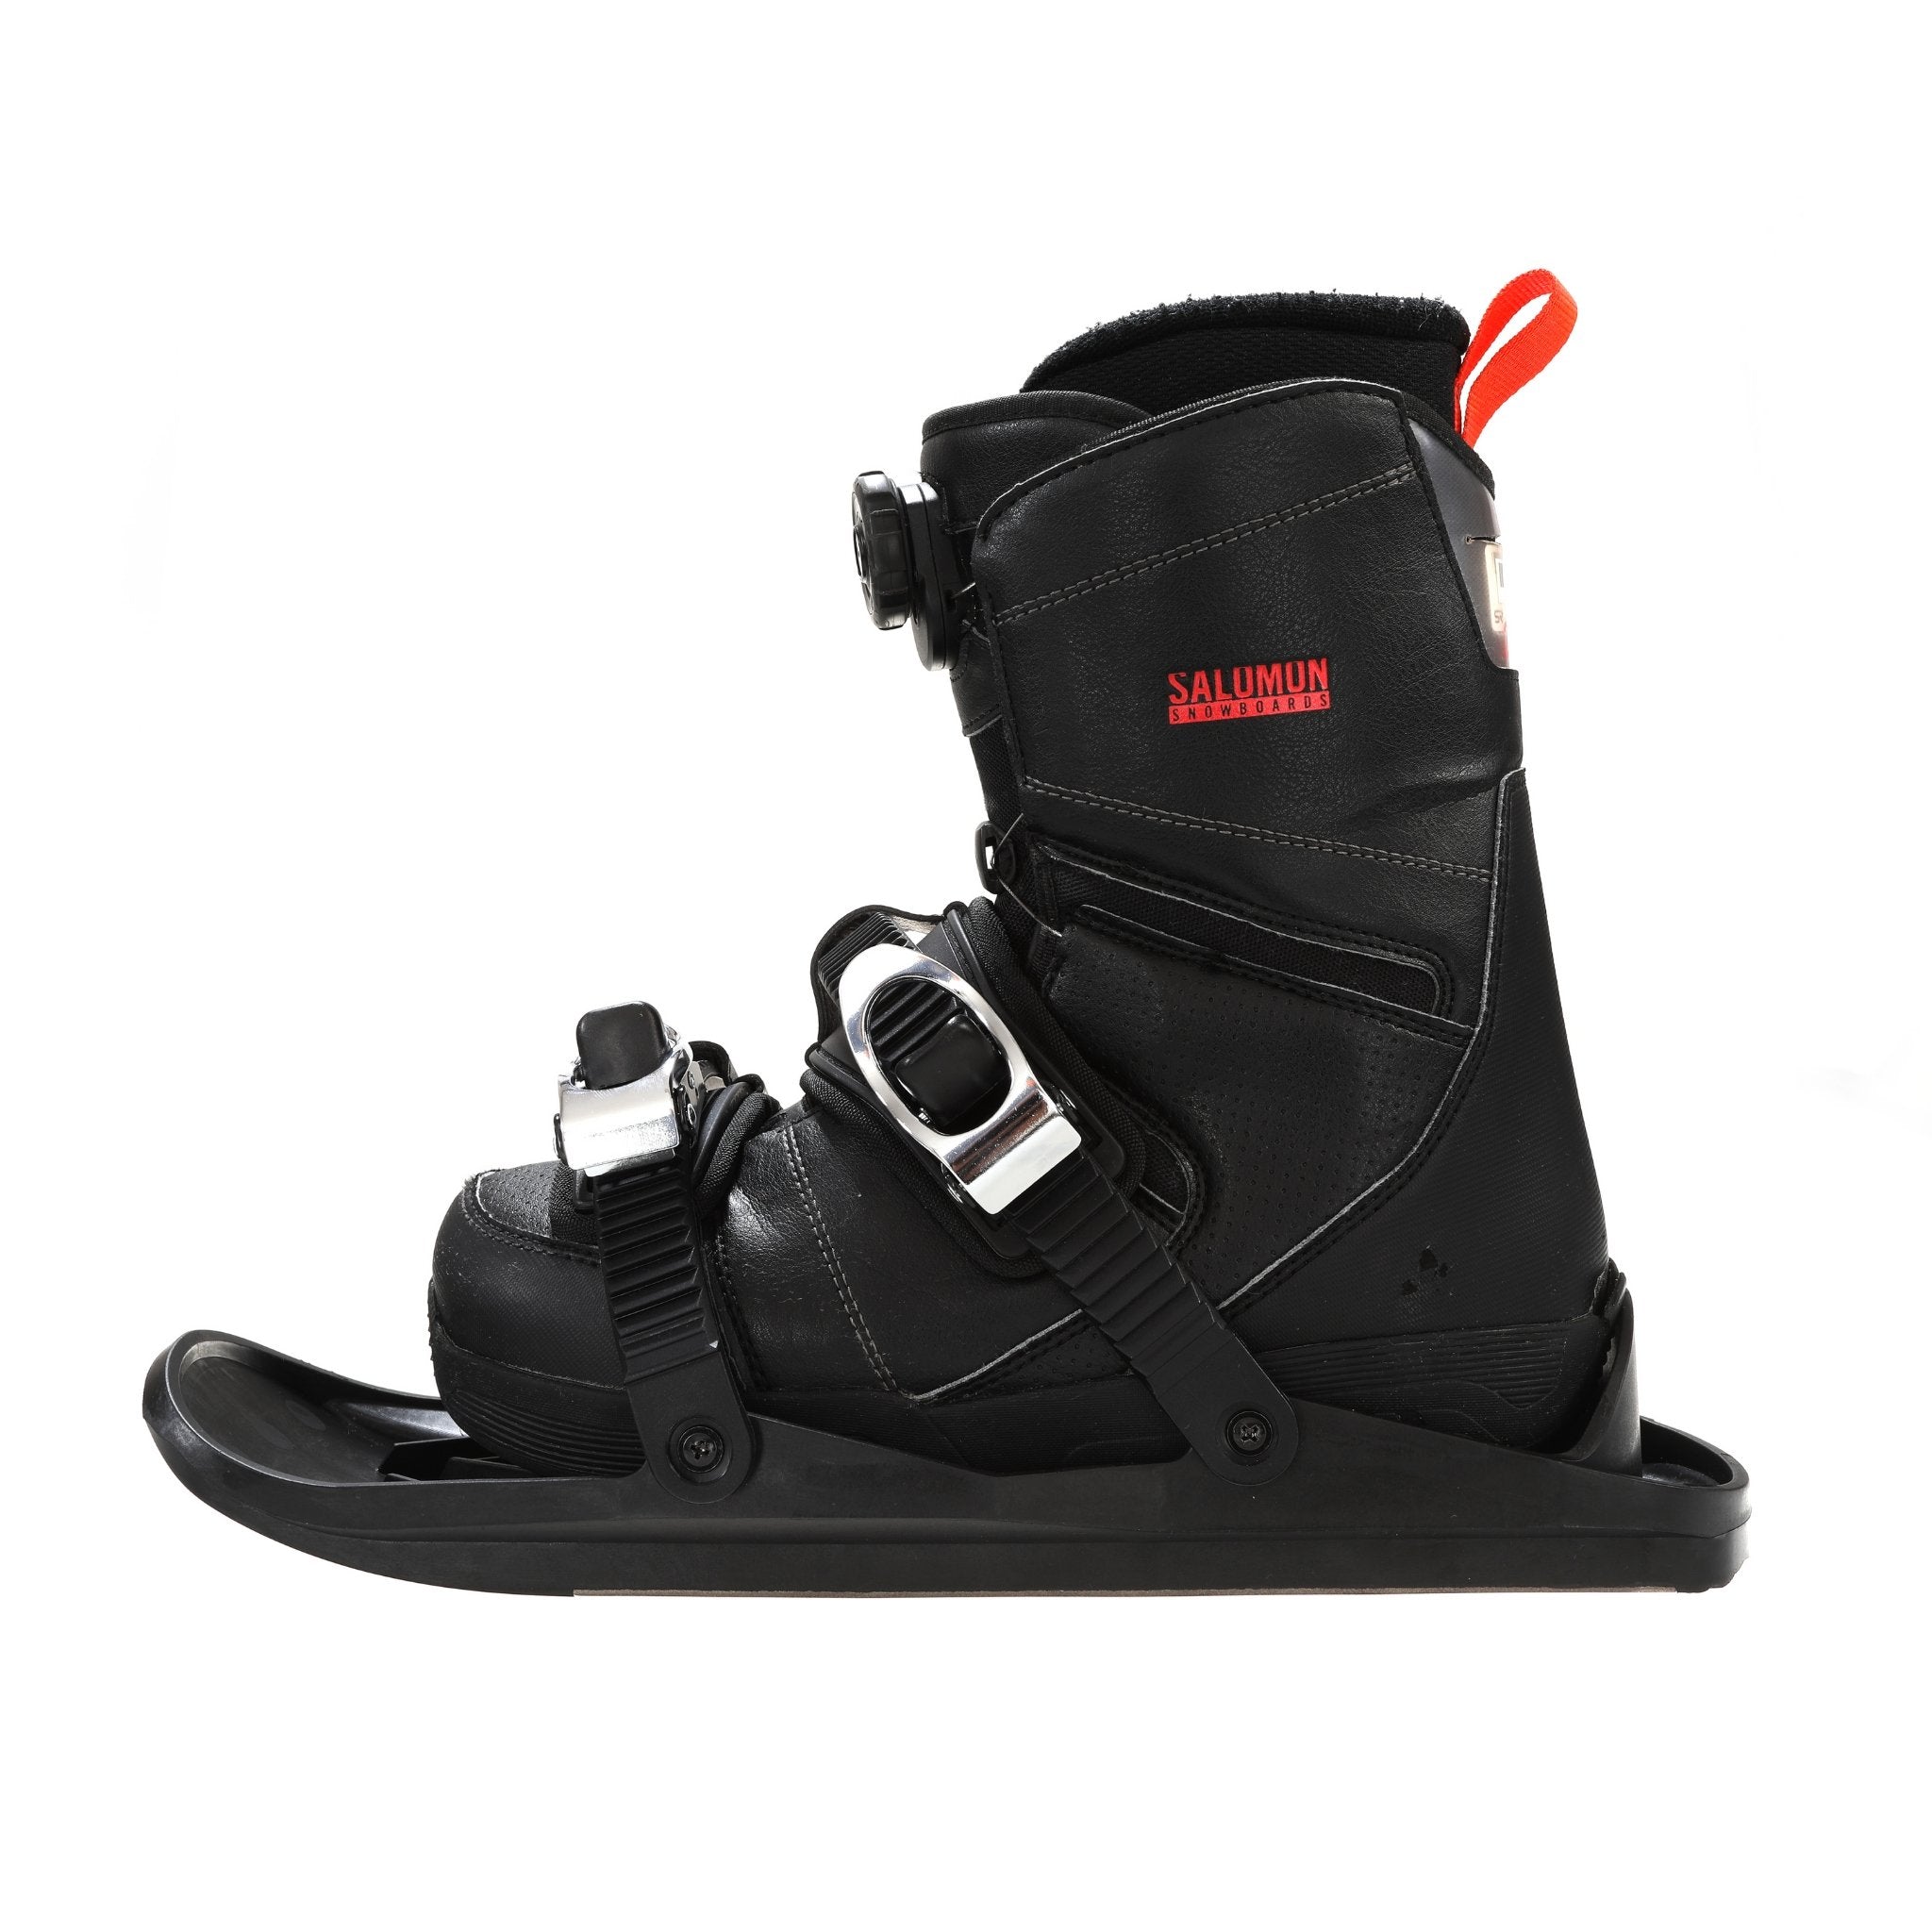 Snowfeet - Mini skis, skates for snow, skiskates, one size fits all, snowboard shoe.